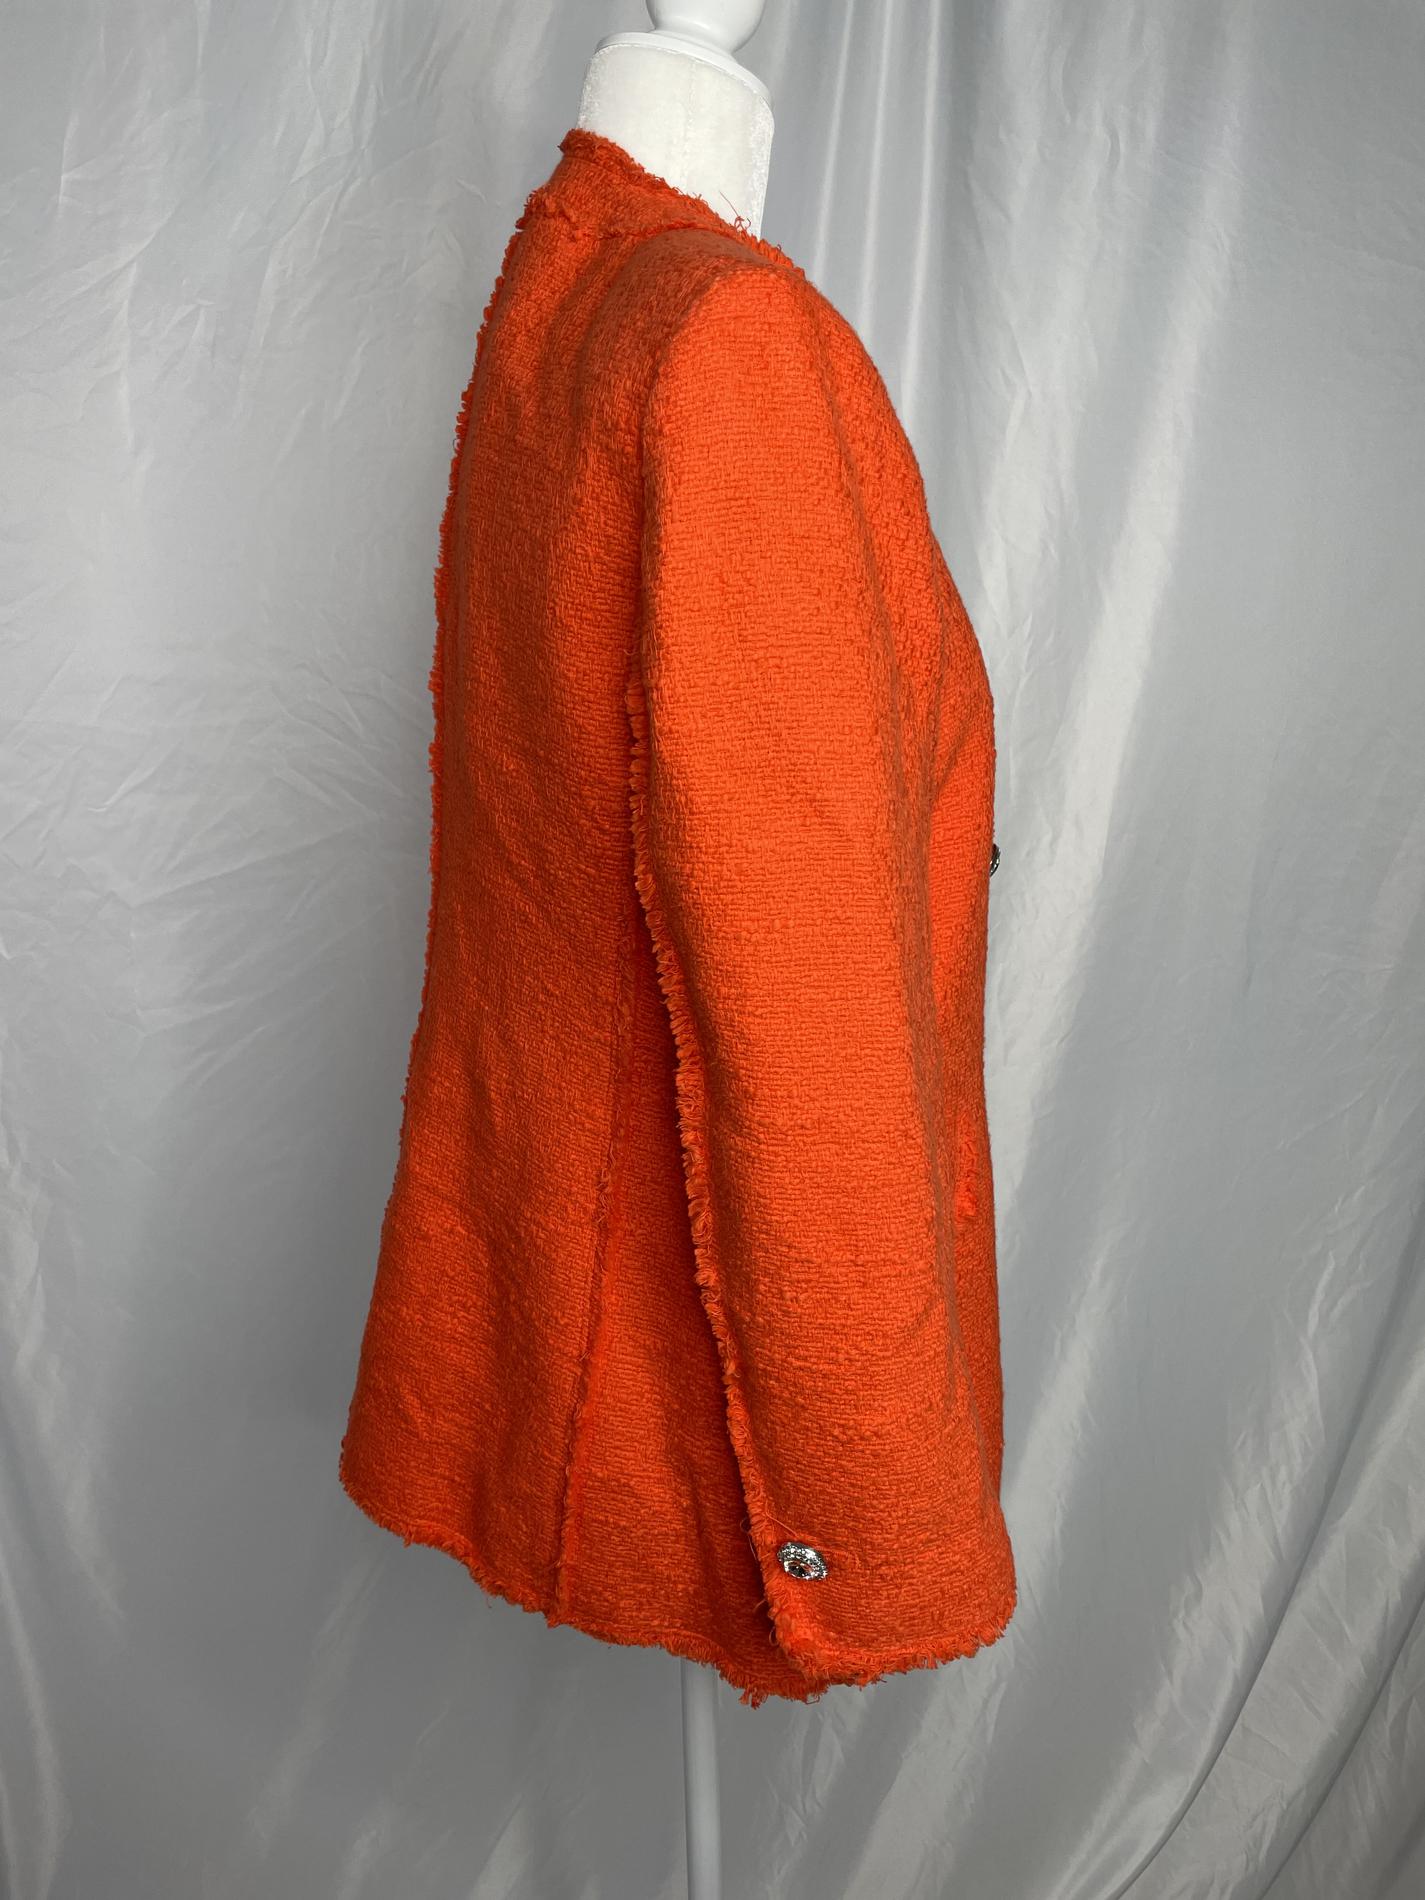 Zara Orange Size 8 Blazer Jumpsuit Dress on Queenly